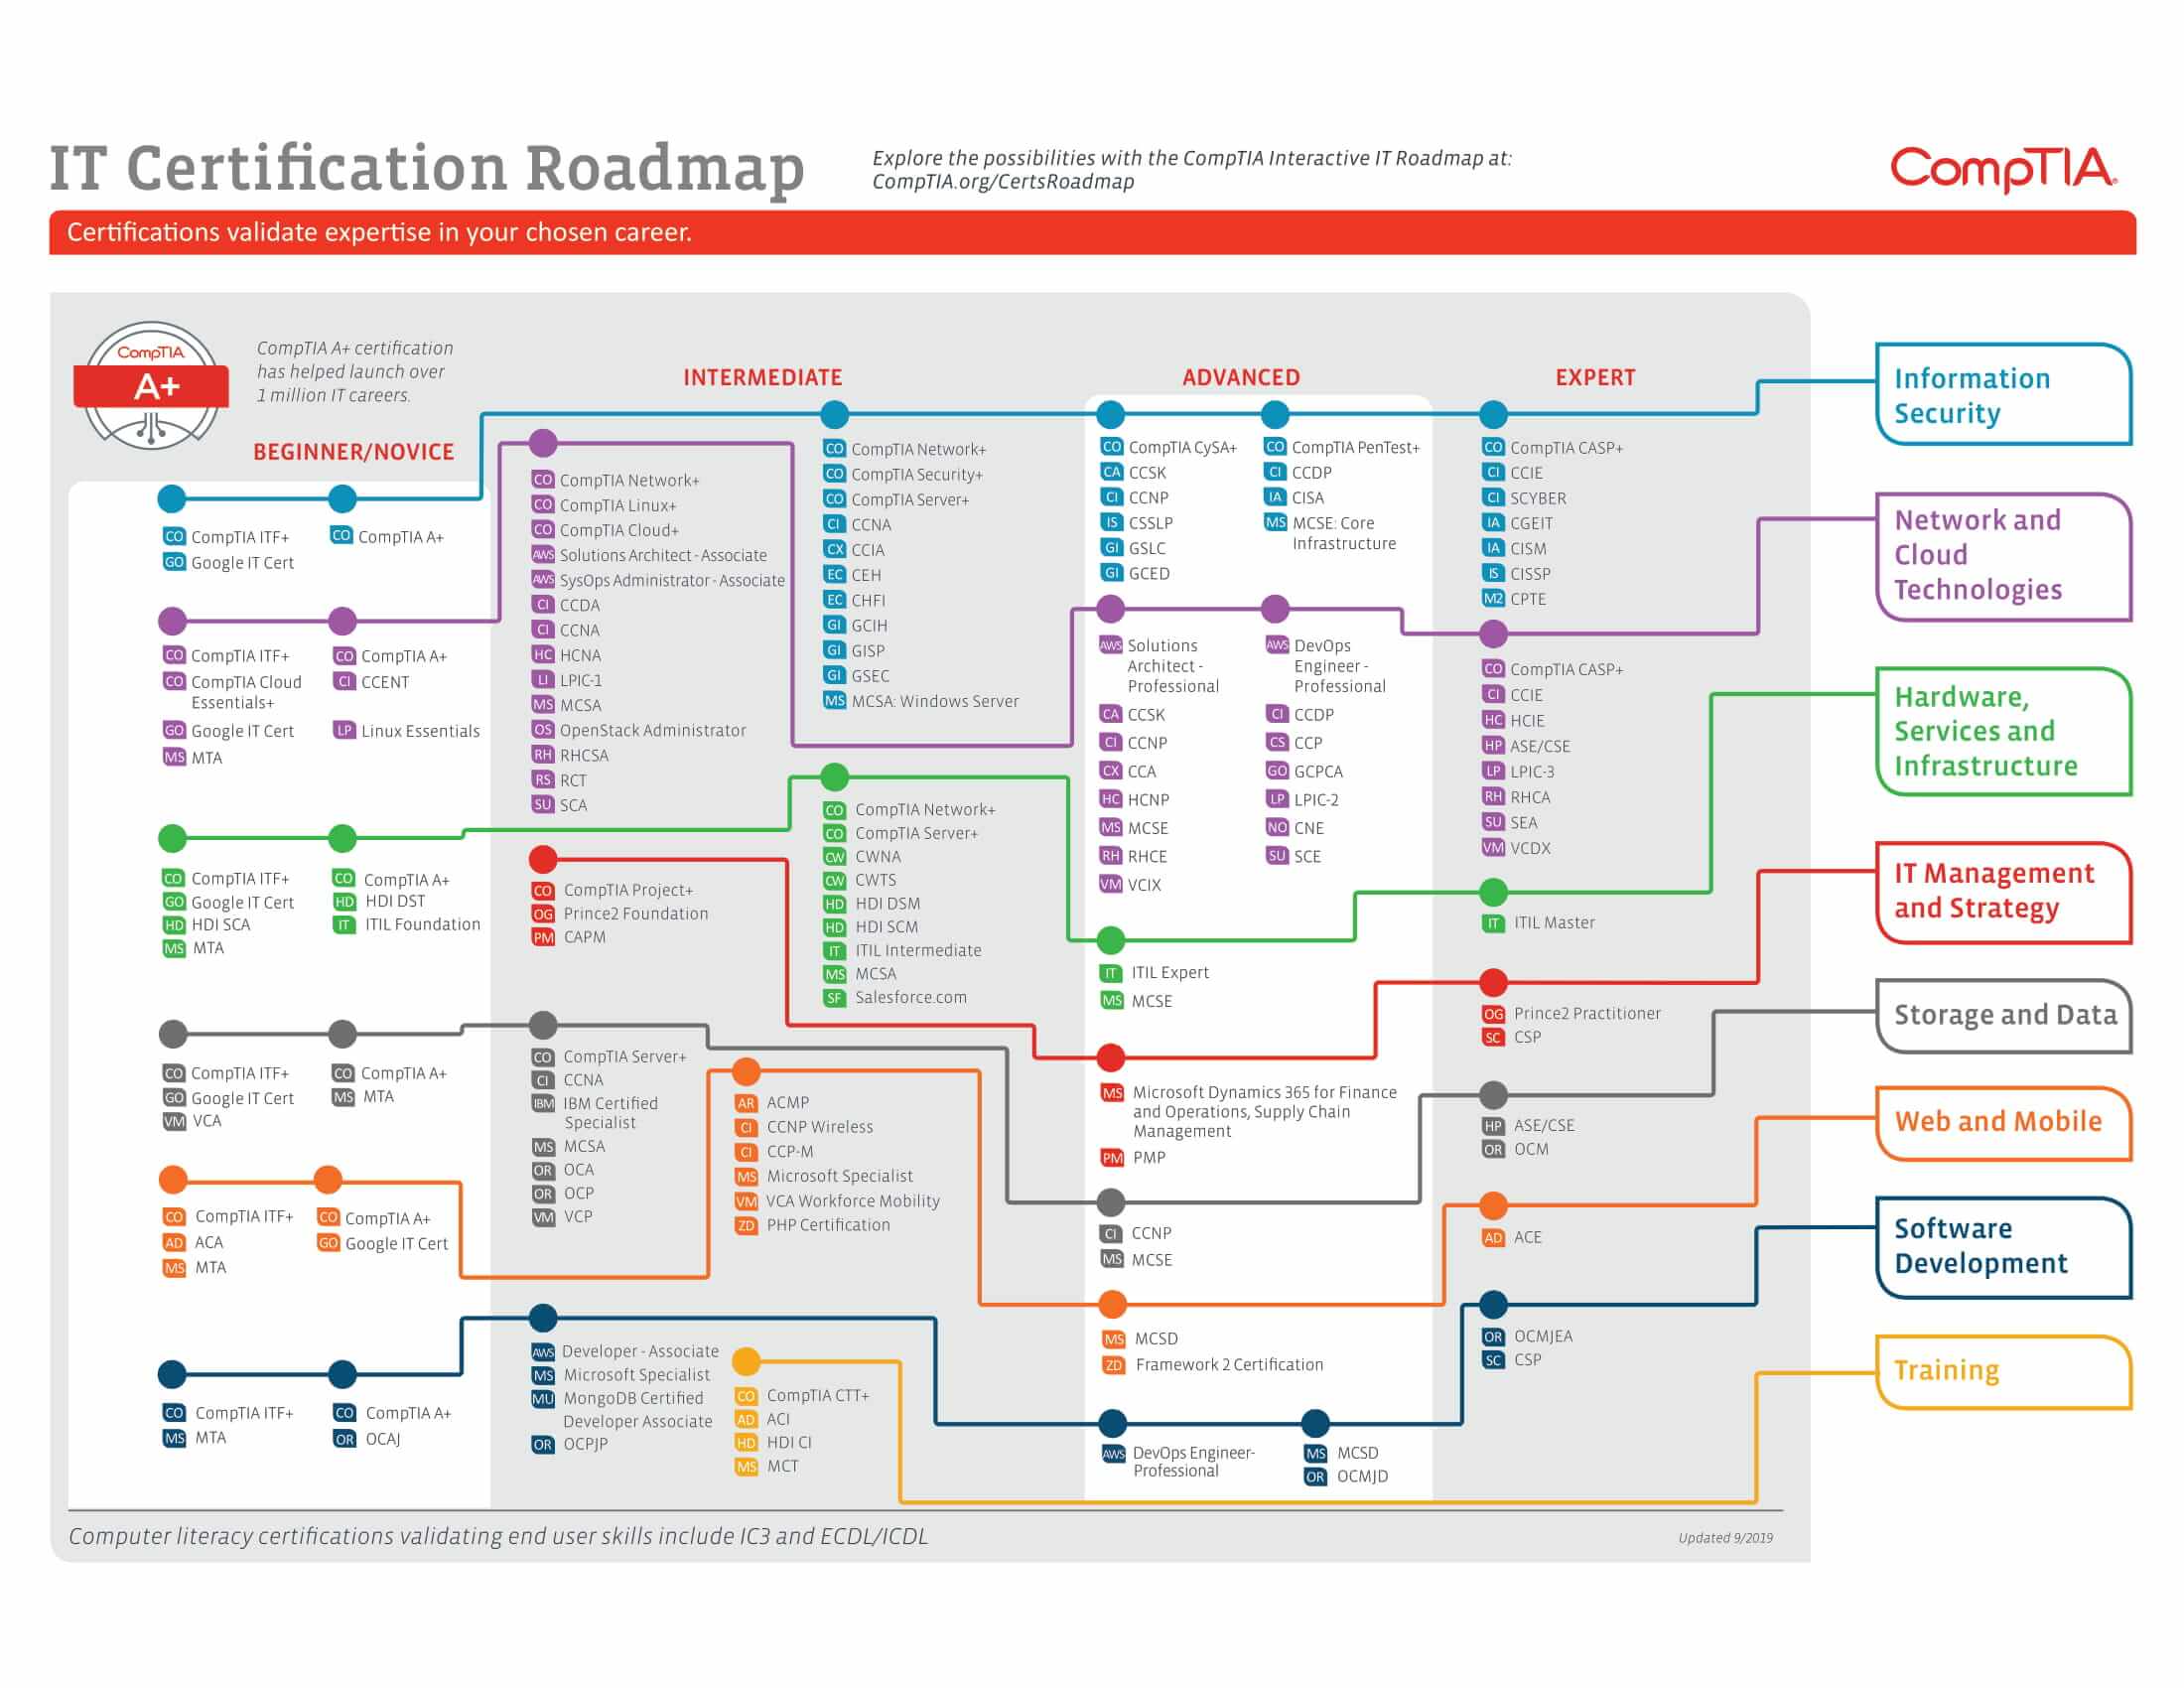 cyberprotech Newsroom IT Certification Roadmap by CompTIA (2020)